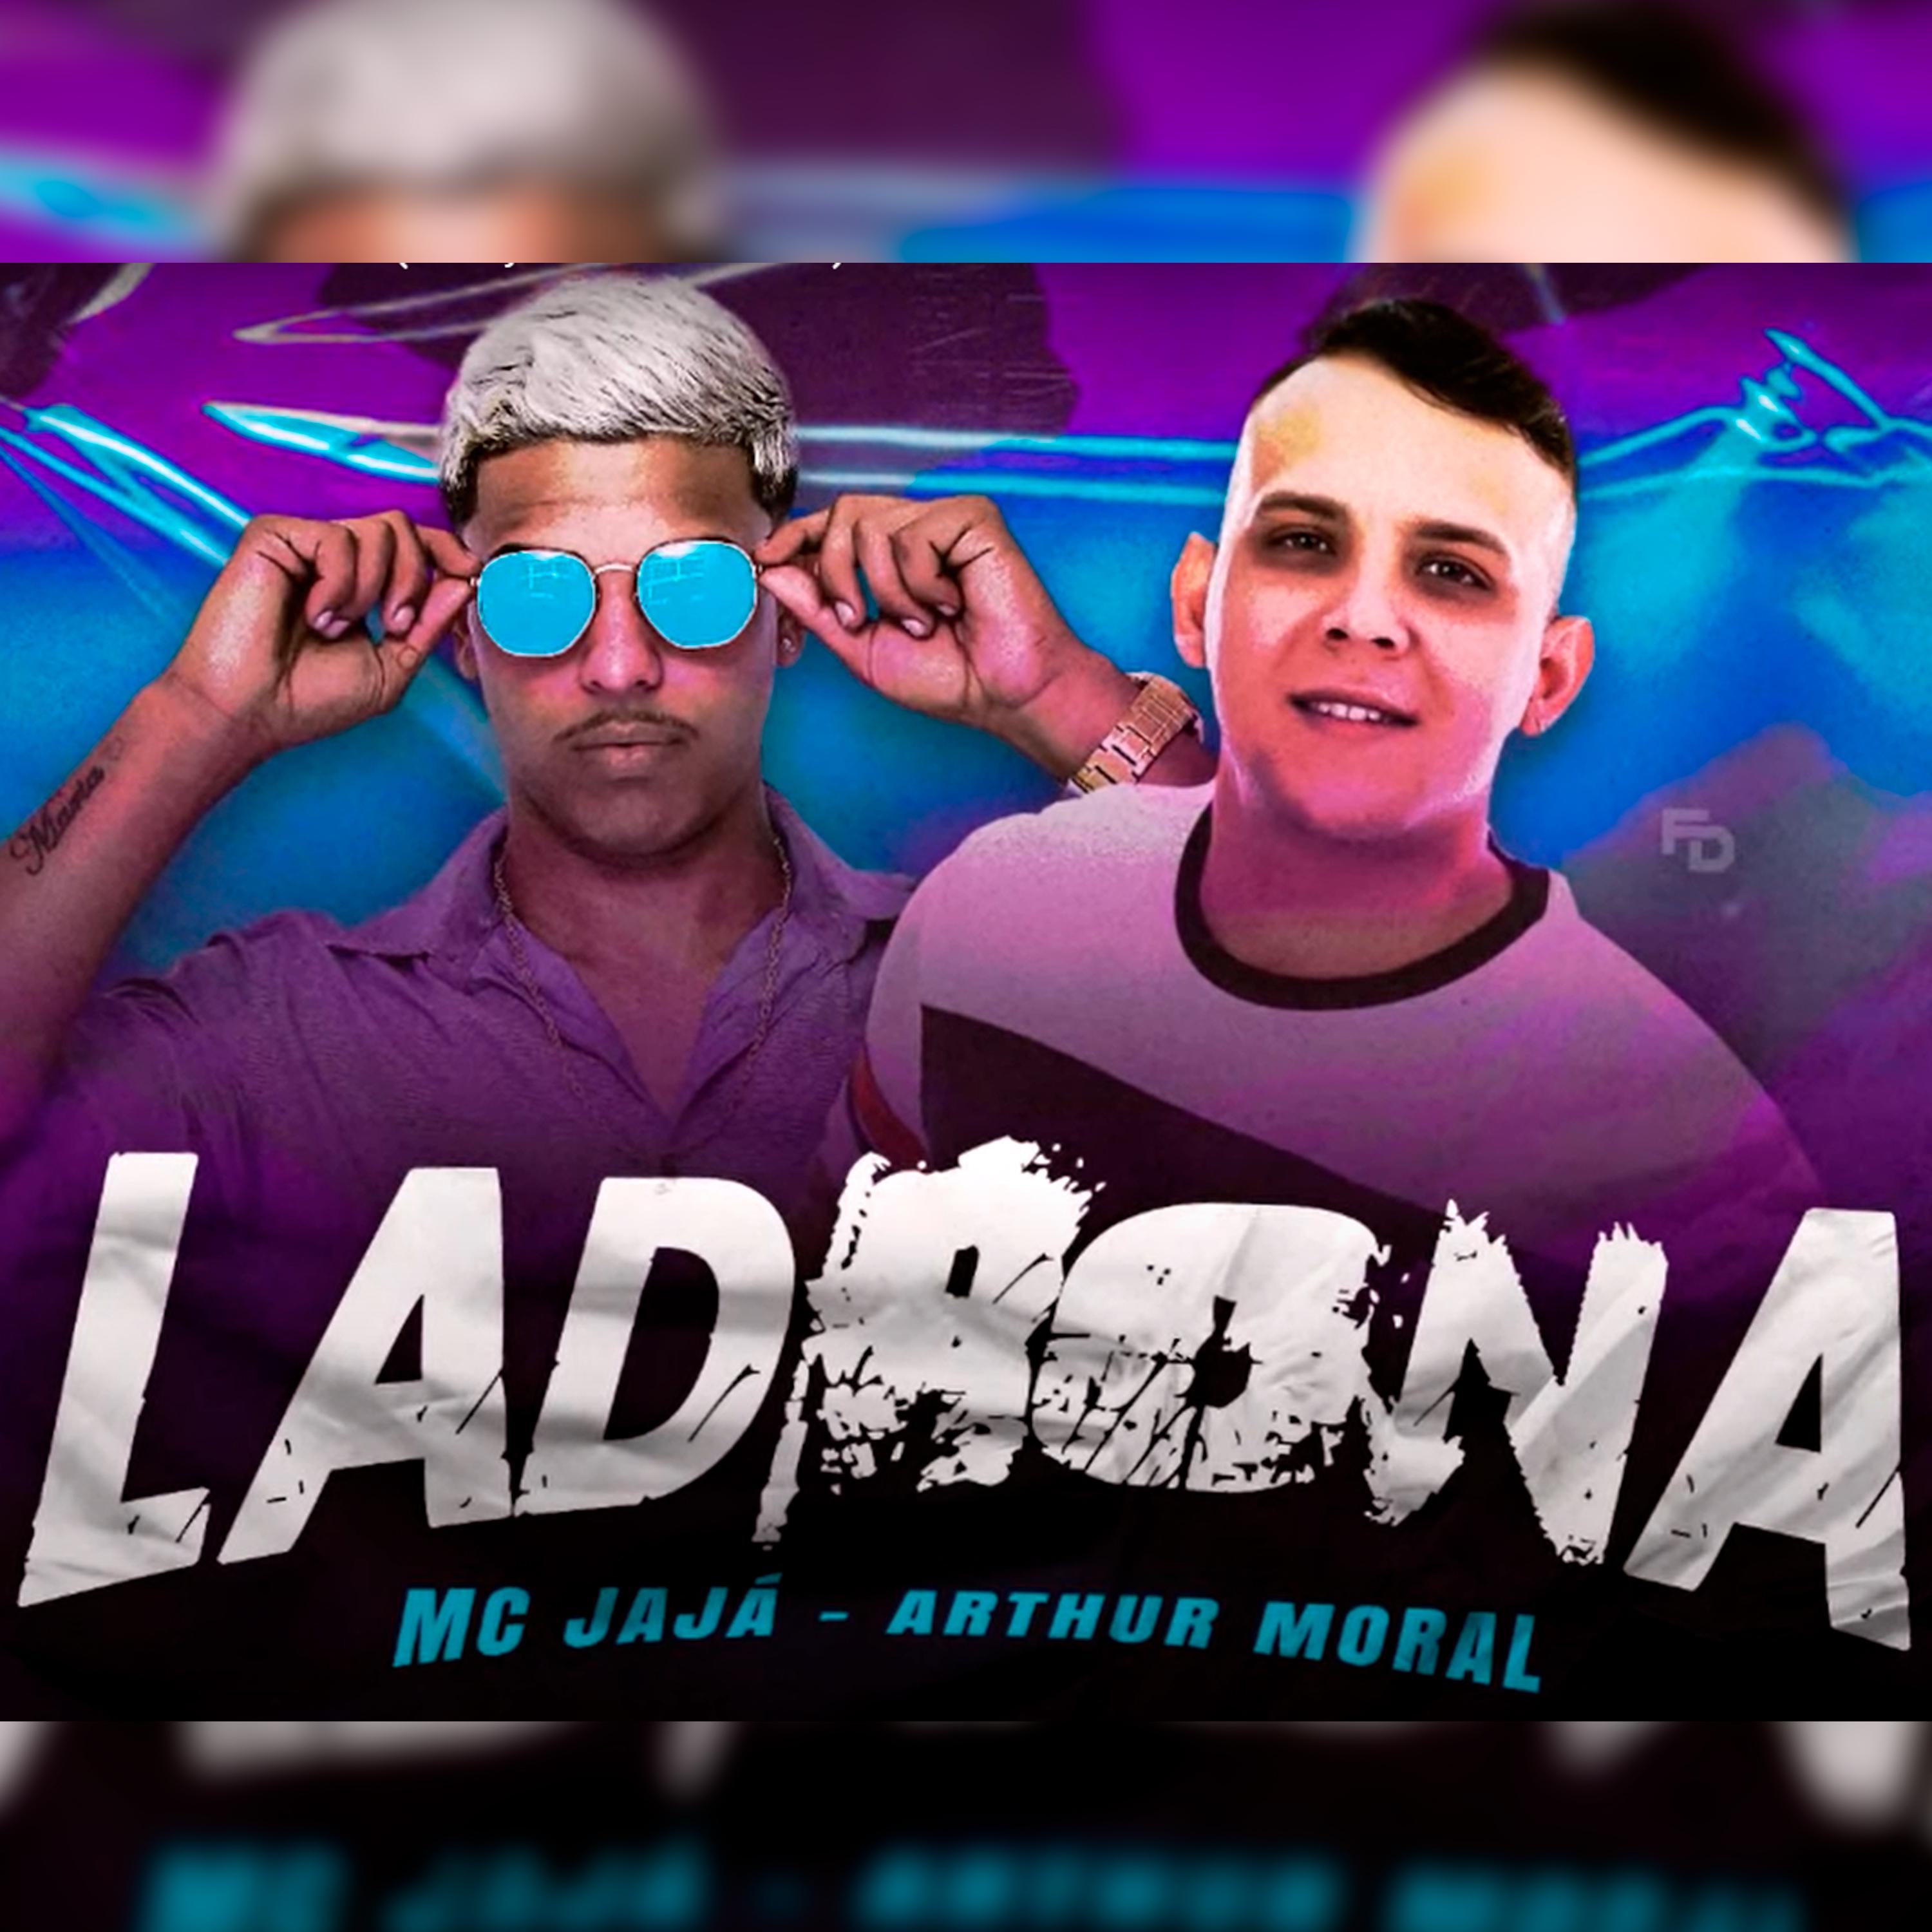 Постер альбома Ladrona